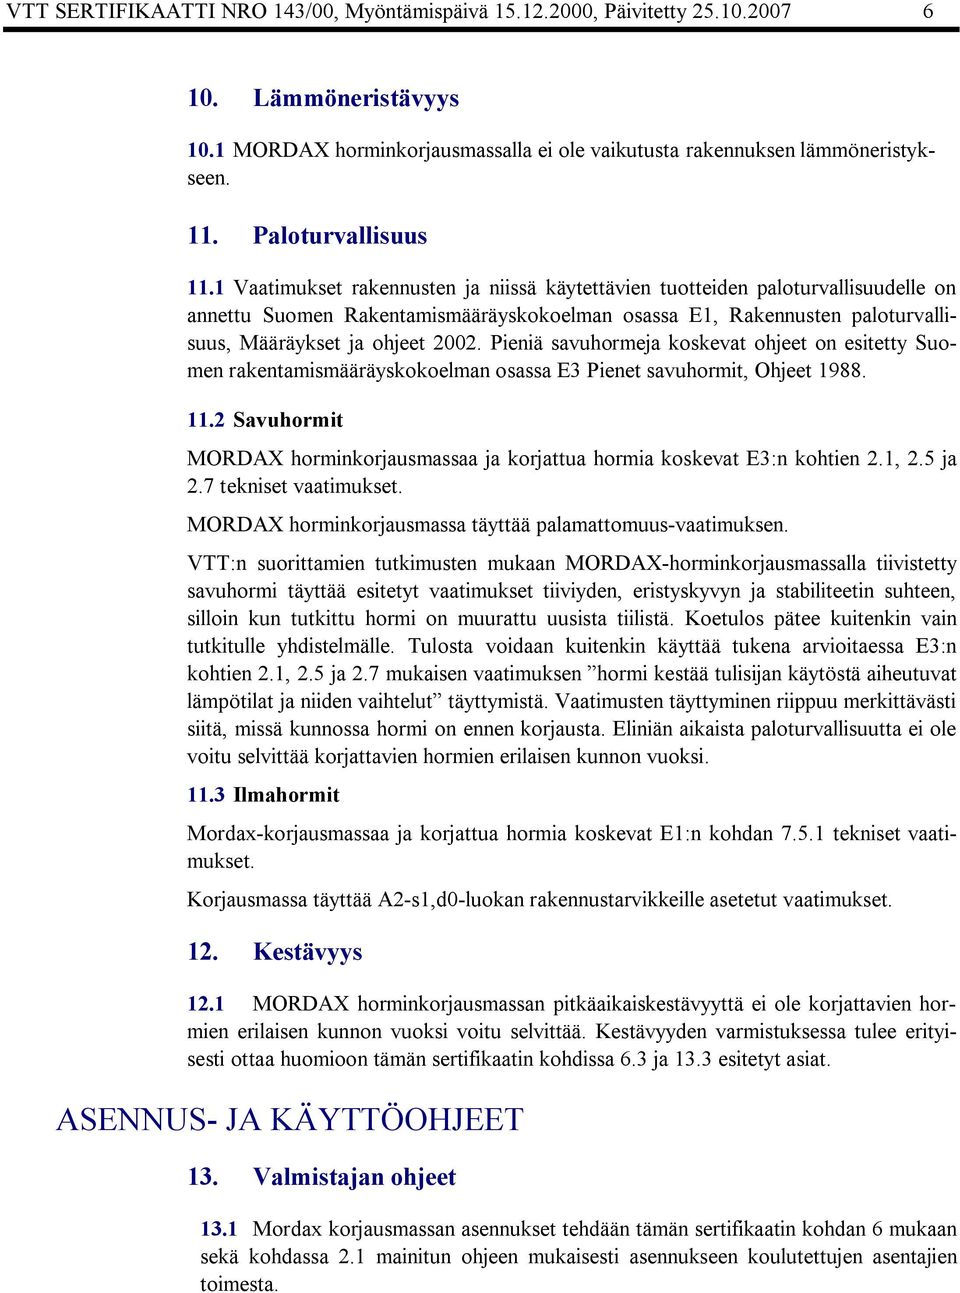 1 Vaatimukset rakennusten ja niissä käytettävien tuotteiden paloturvallisuudelle on annettu Suomen Rakentamismääräyskokoelman osassa E1, Rakennusten paloturvallisuus, Määräykset ja ohjeet 2002.